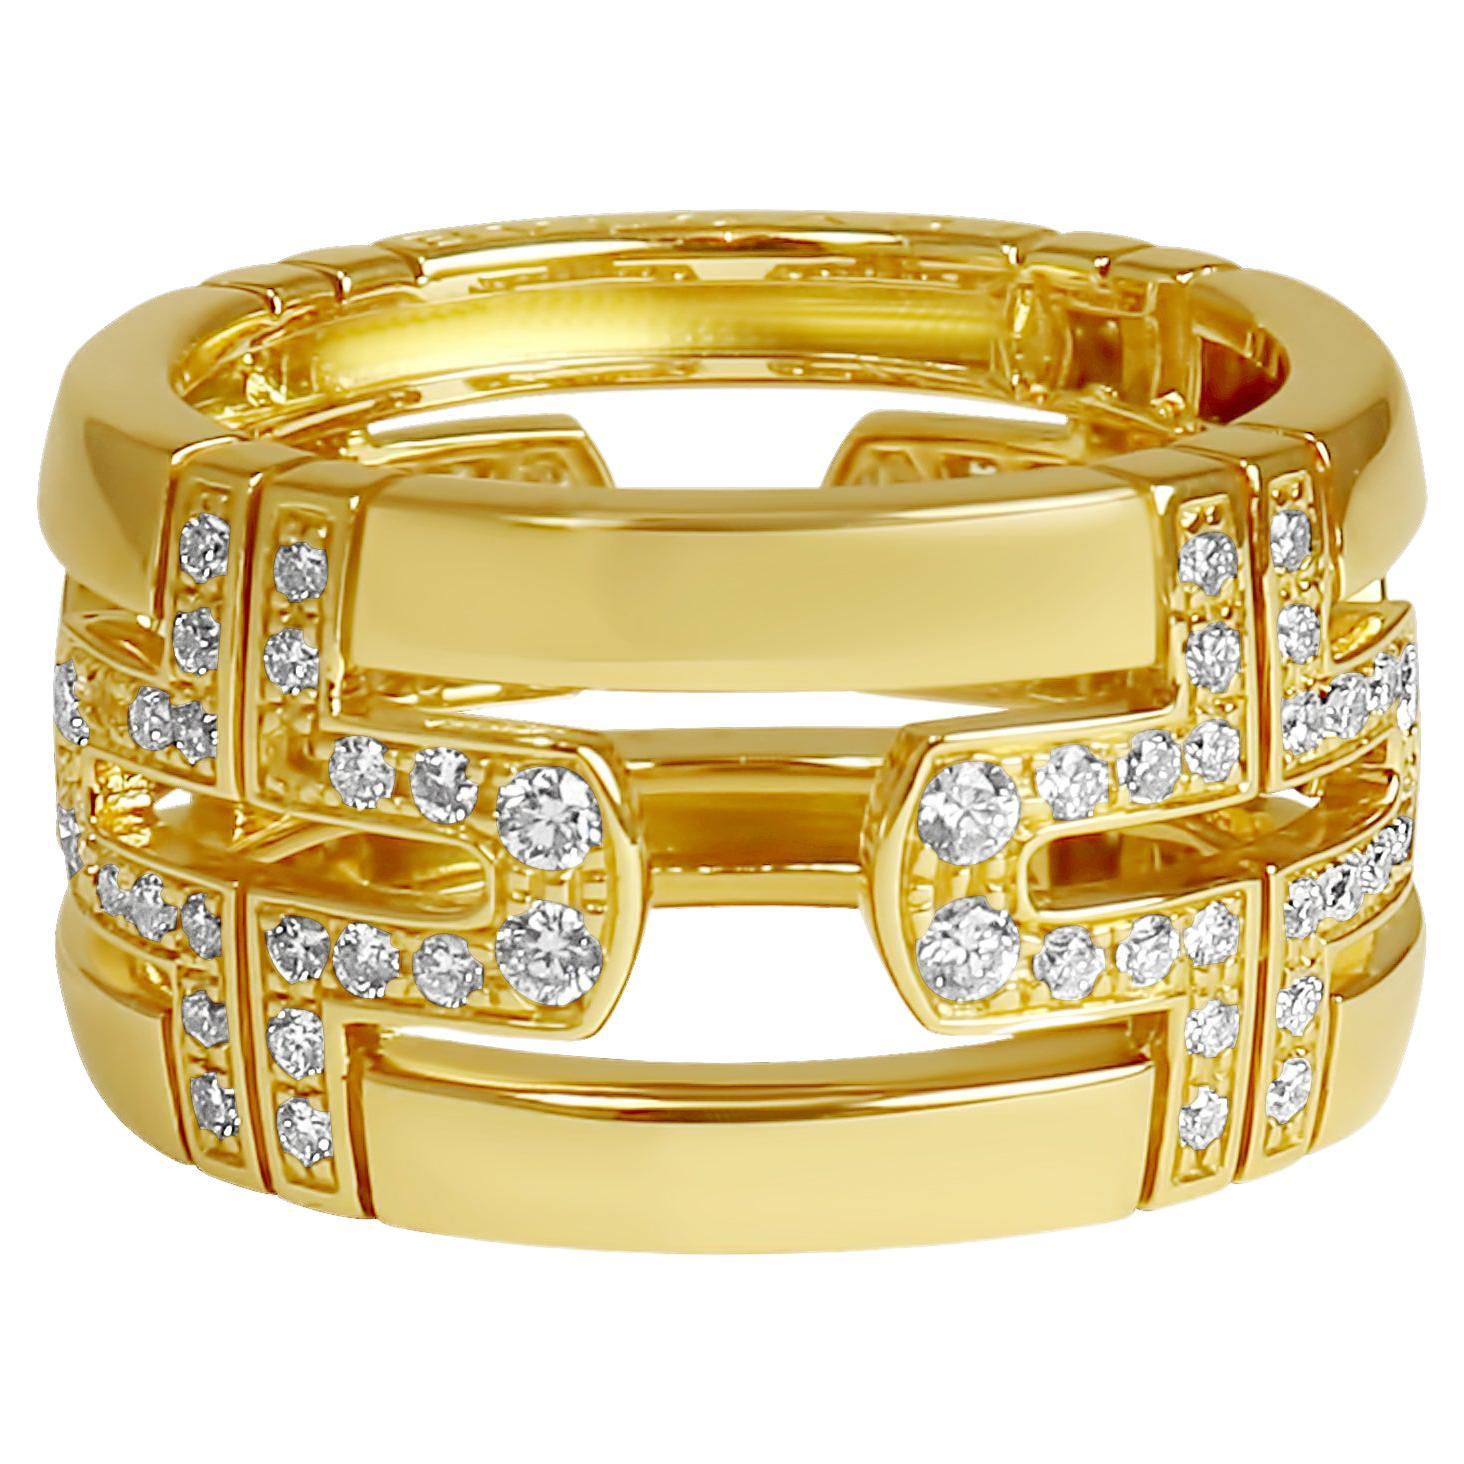 Bvlgari 'Parentesi' Diamond and Yellow Gold Wide Band Ring